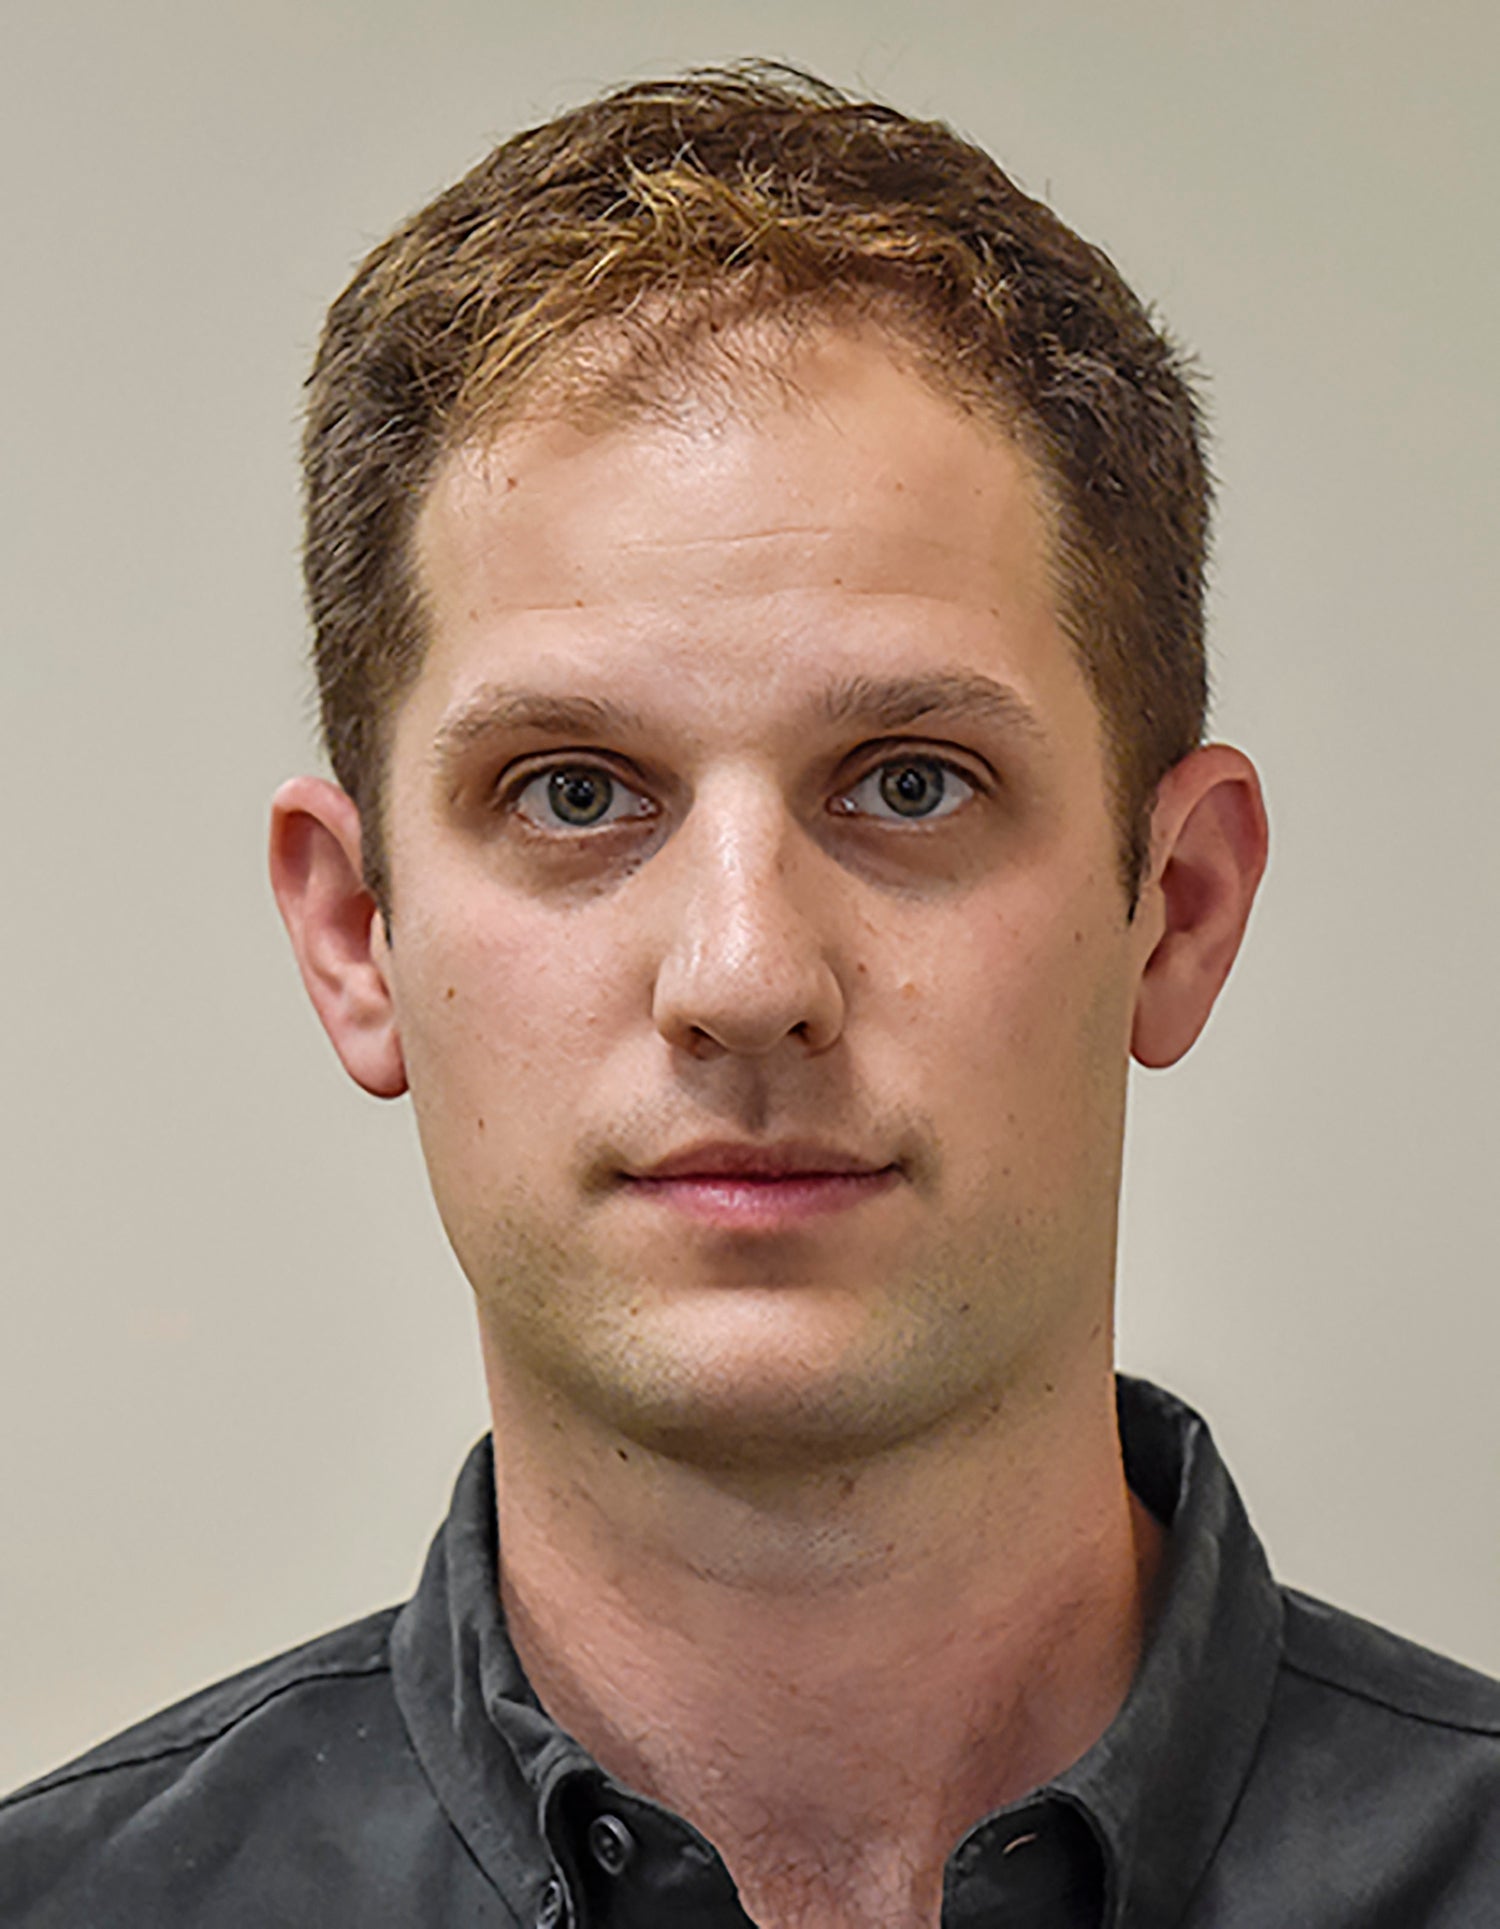 Foto identitas Evan Gershkovich, seorang reporter Amerika Serikat yang bekerja untuk Wall Street Journal.  